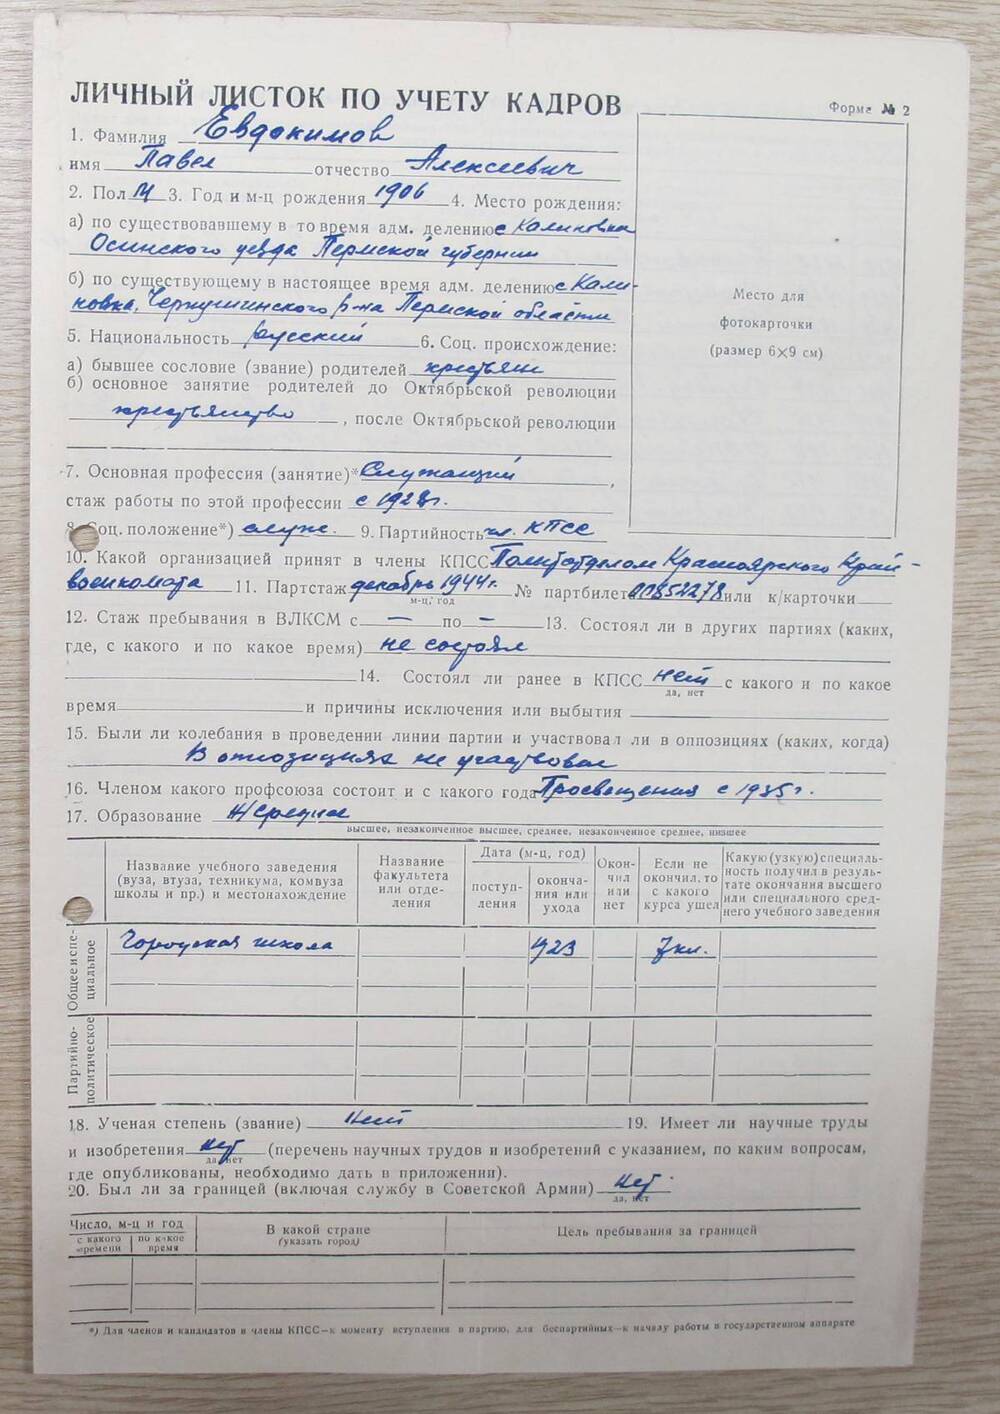 Личный листок по учету кадров Евдокимова П. А.